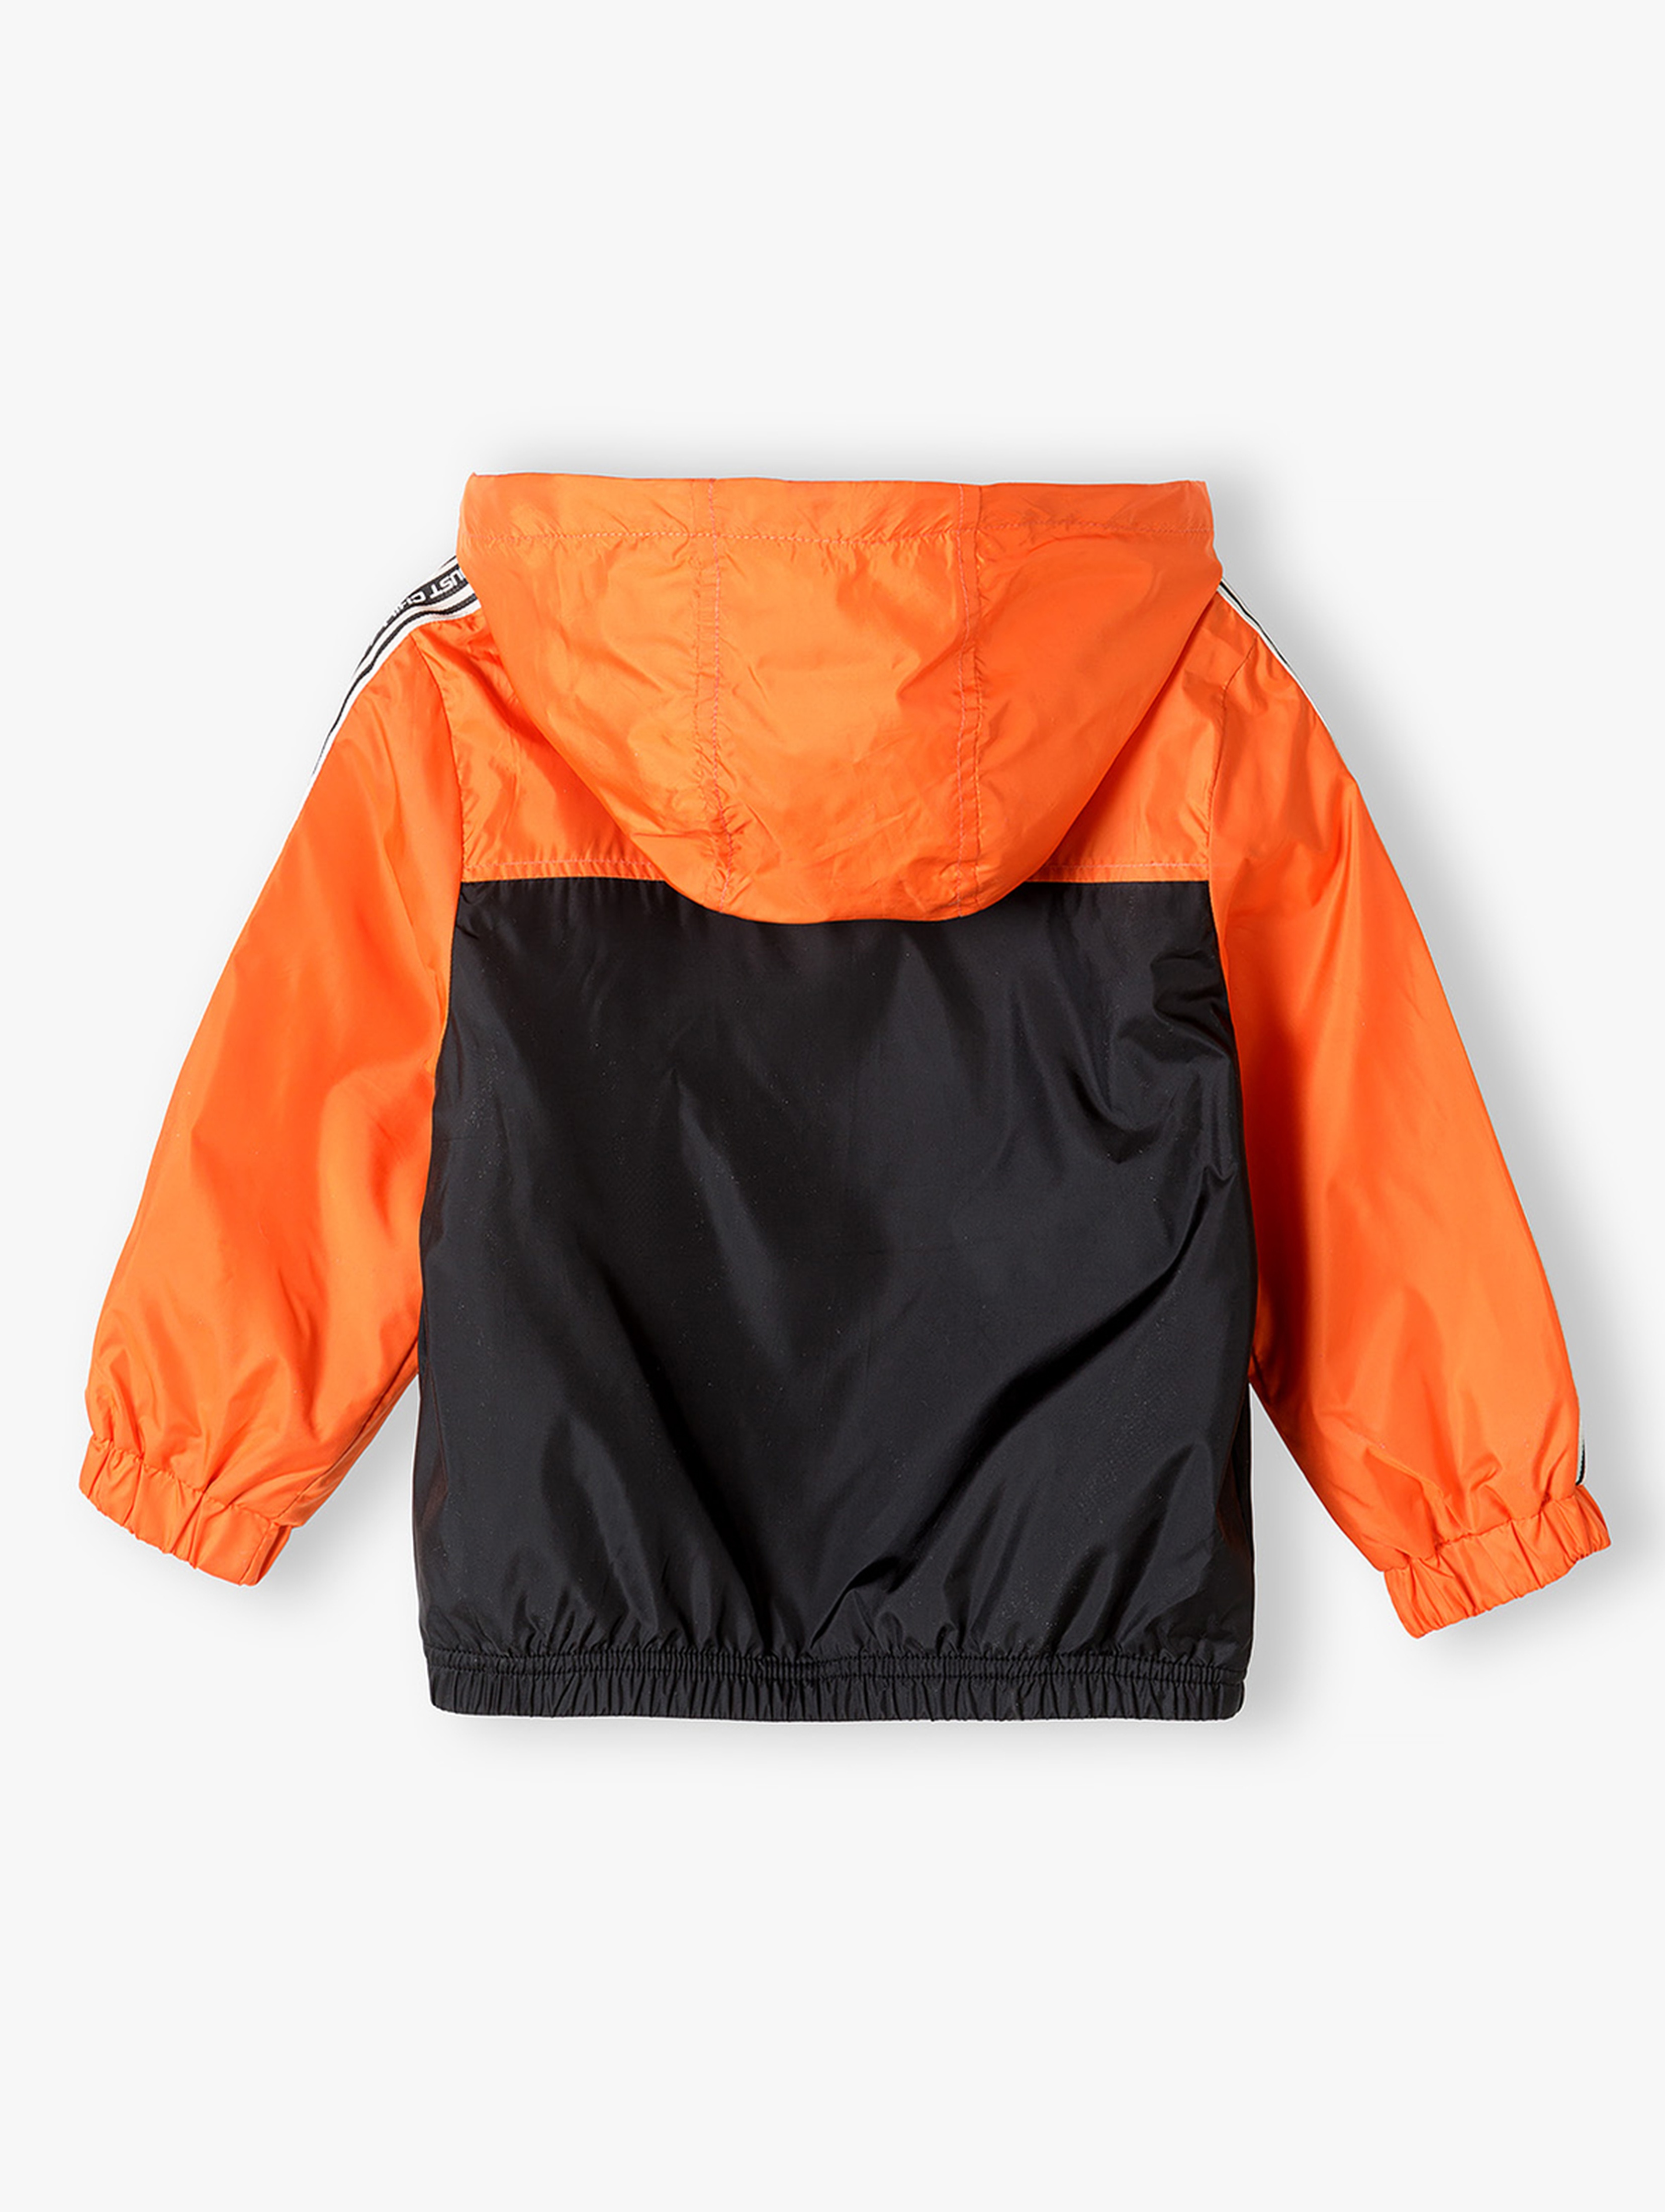 Pomarańczowa kurtka typu wiatrówka dla chłopca z kapturem